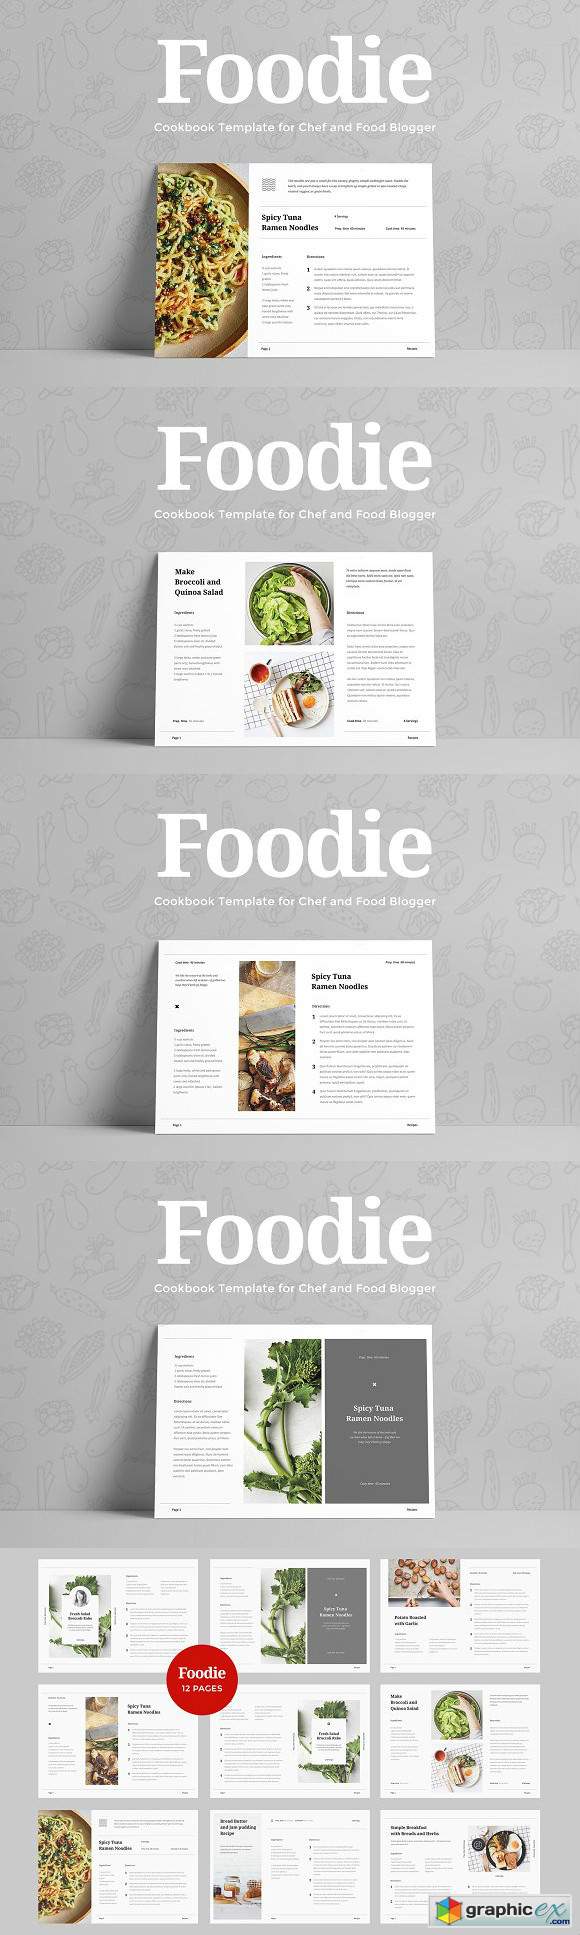 Foodie - Cookbook Template